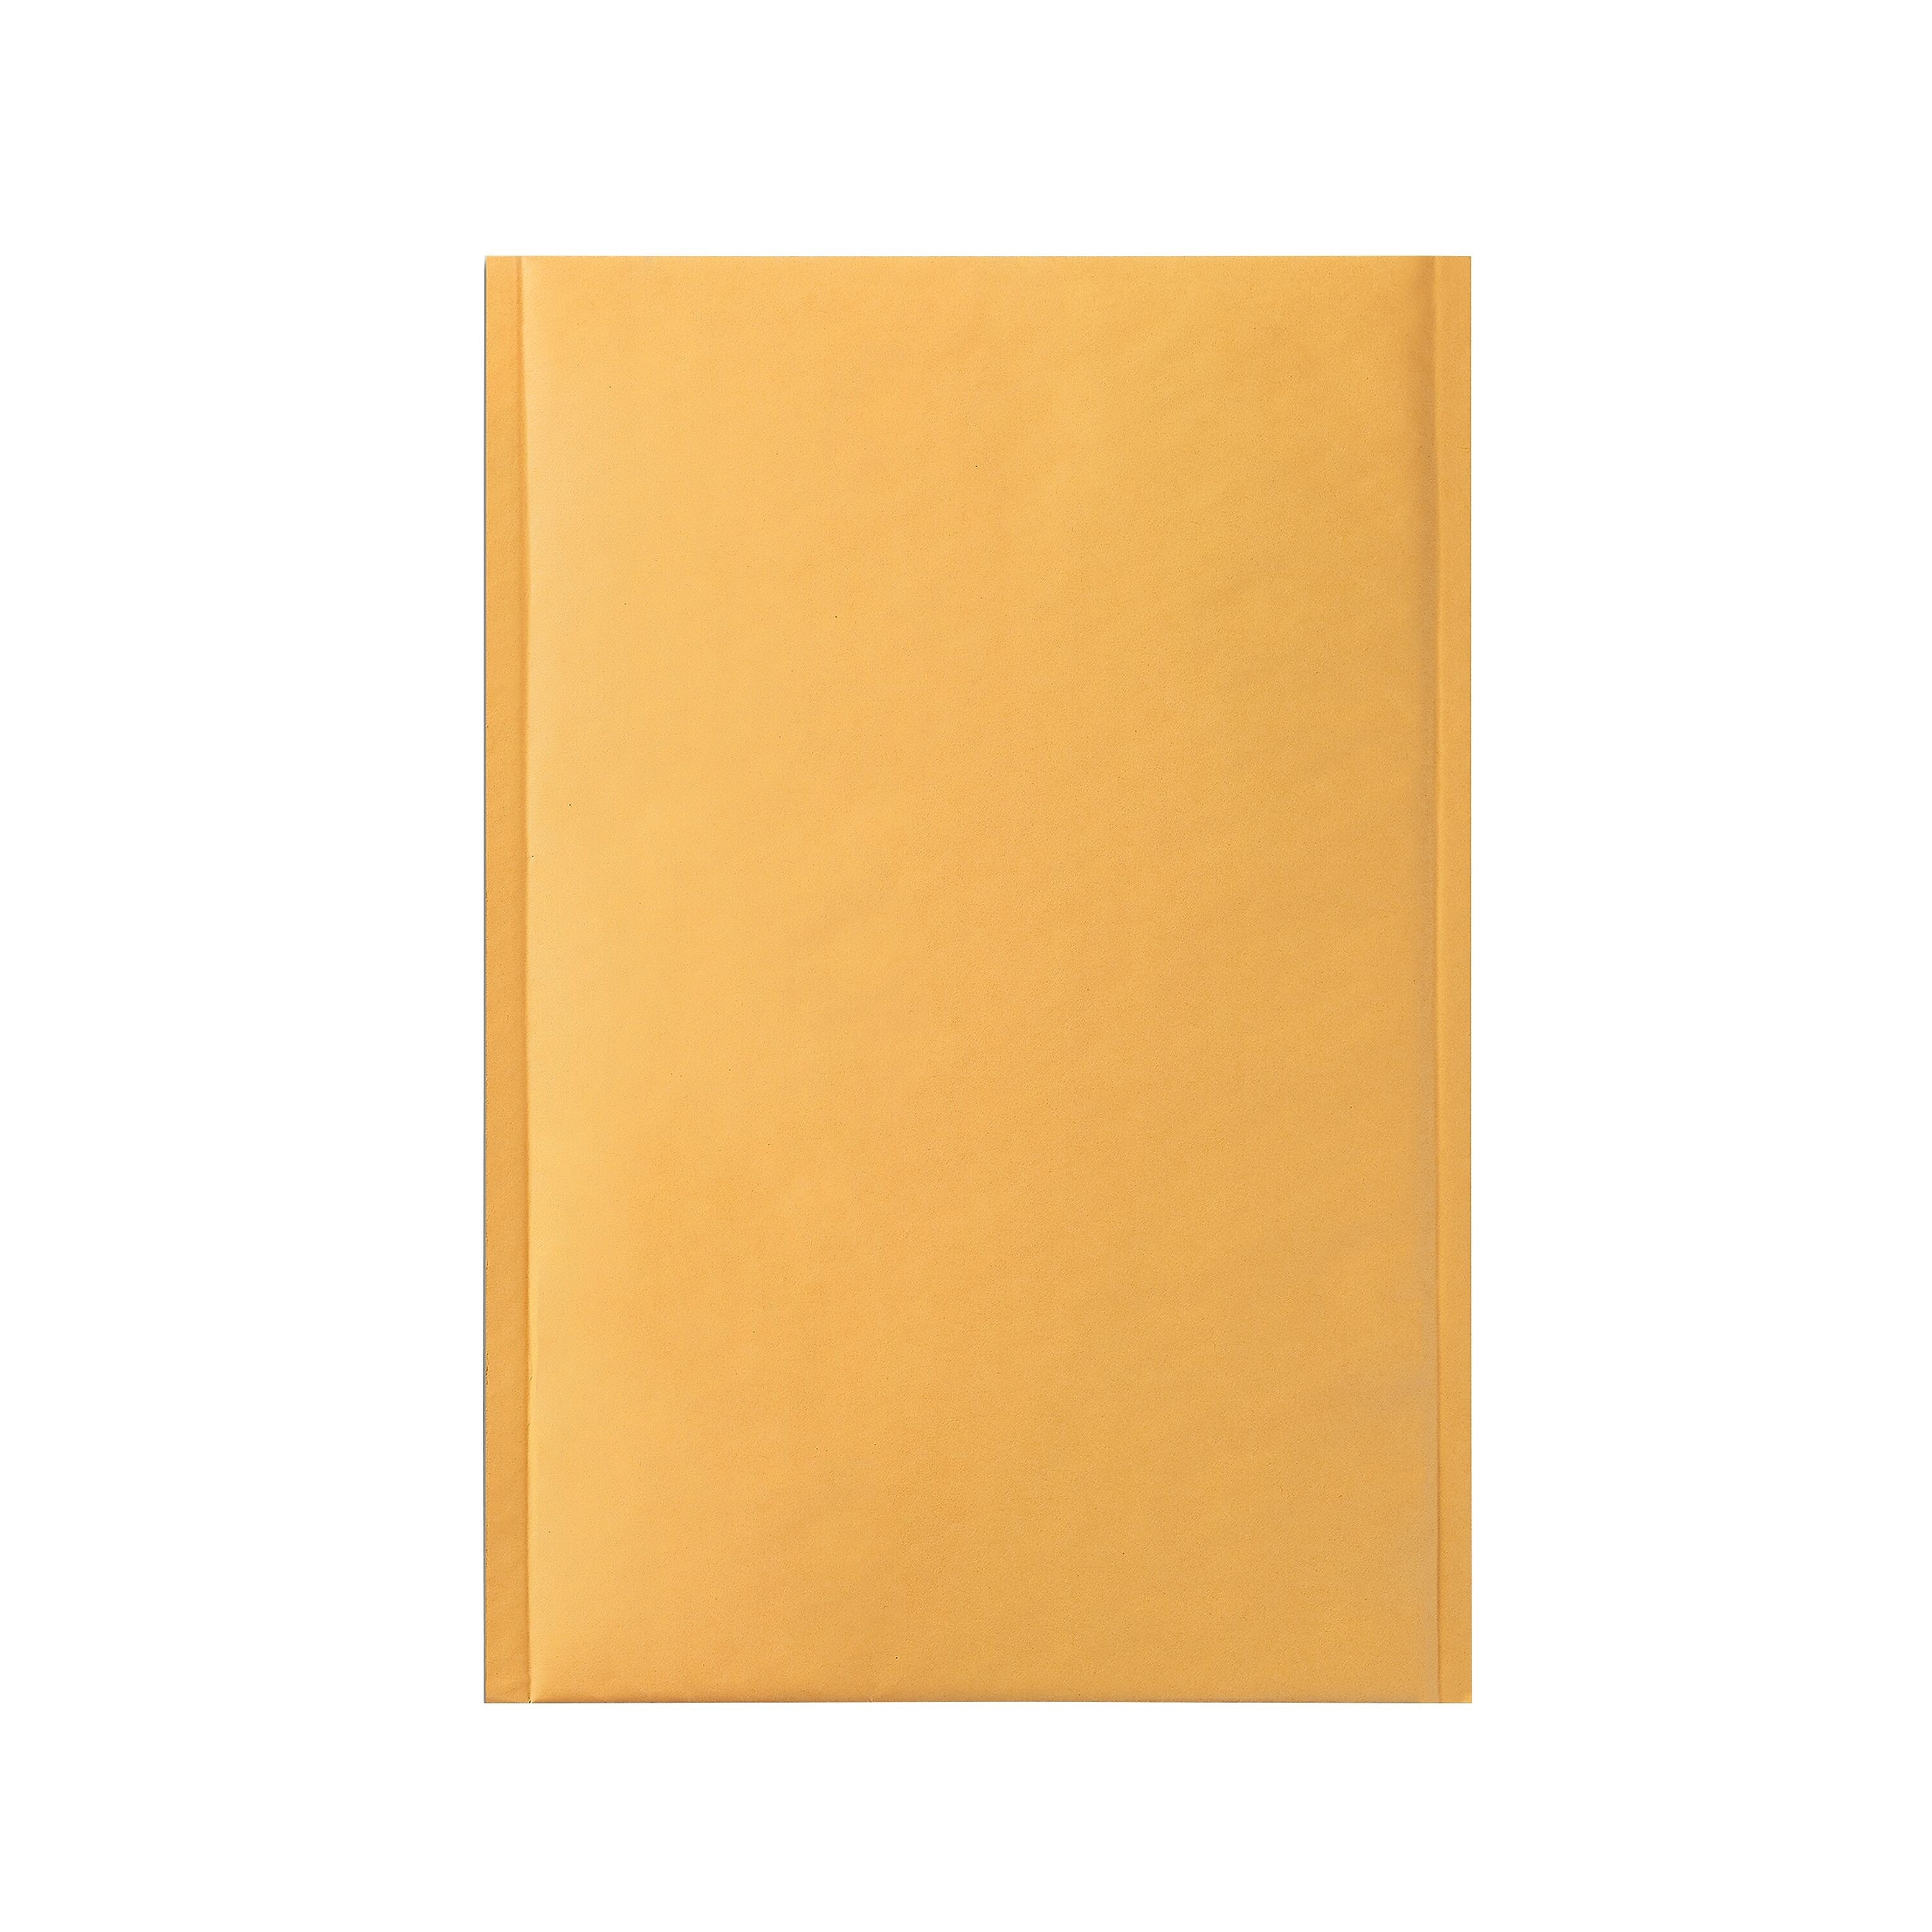 9.25" x 11" Self-Sealing Bubble Mailer, #2, 25/Carton